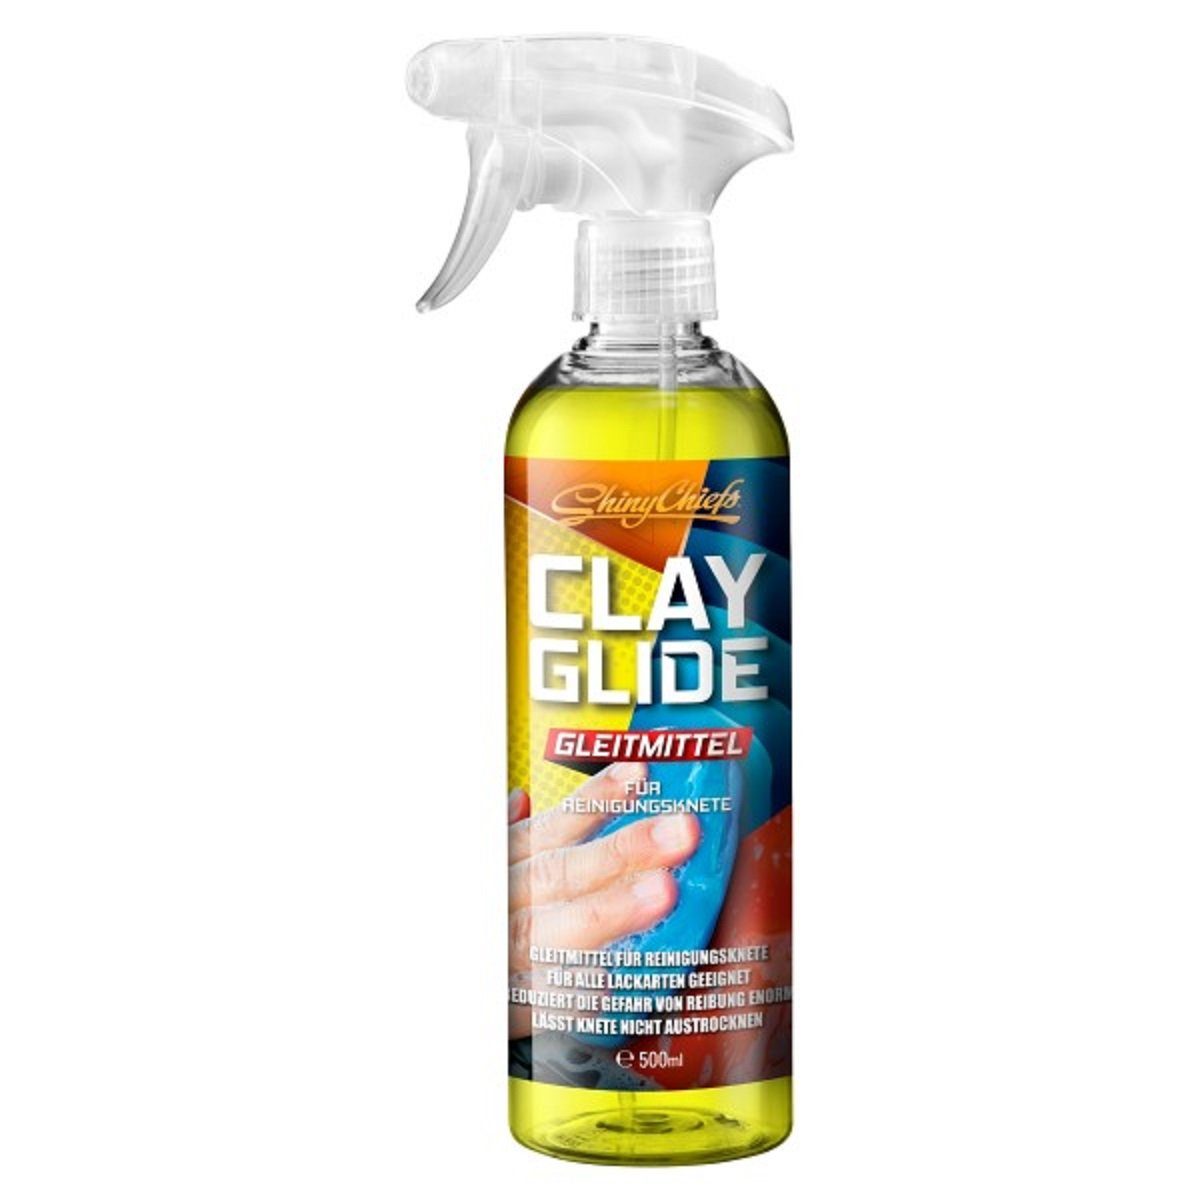 (1-St) für Auto-Reinigungsmittel ShinyChiefs Hilfsmittel GLEITMITTEL GLIDE Reinigungsknete CLAY den Einsatz von